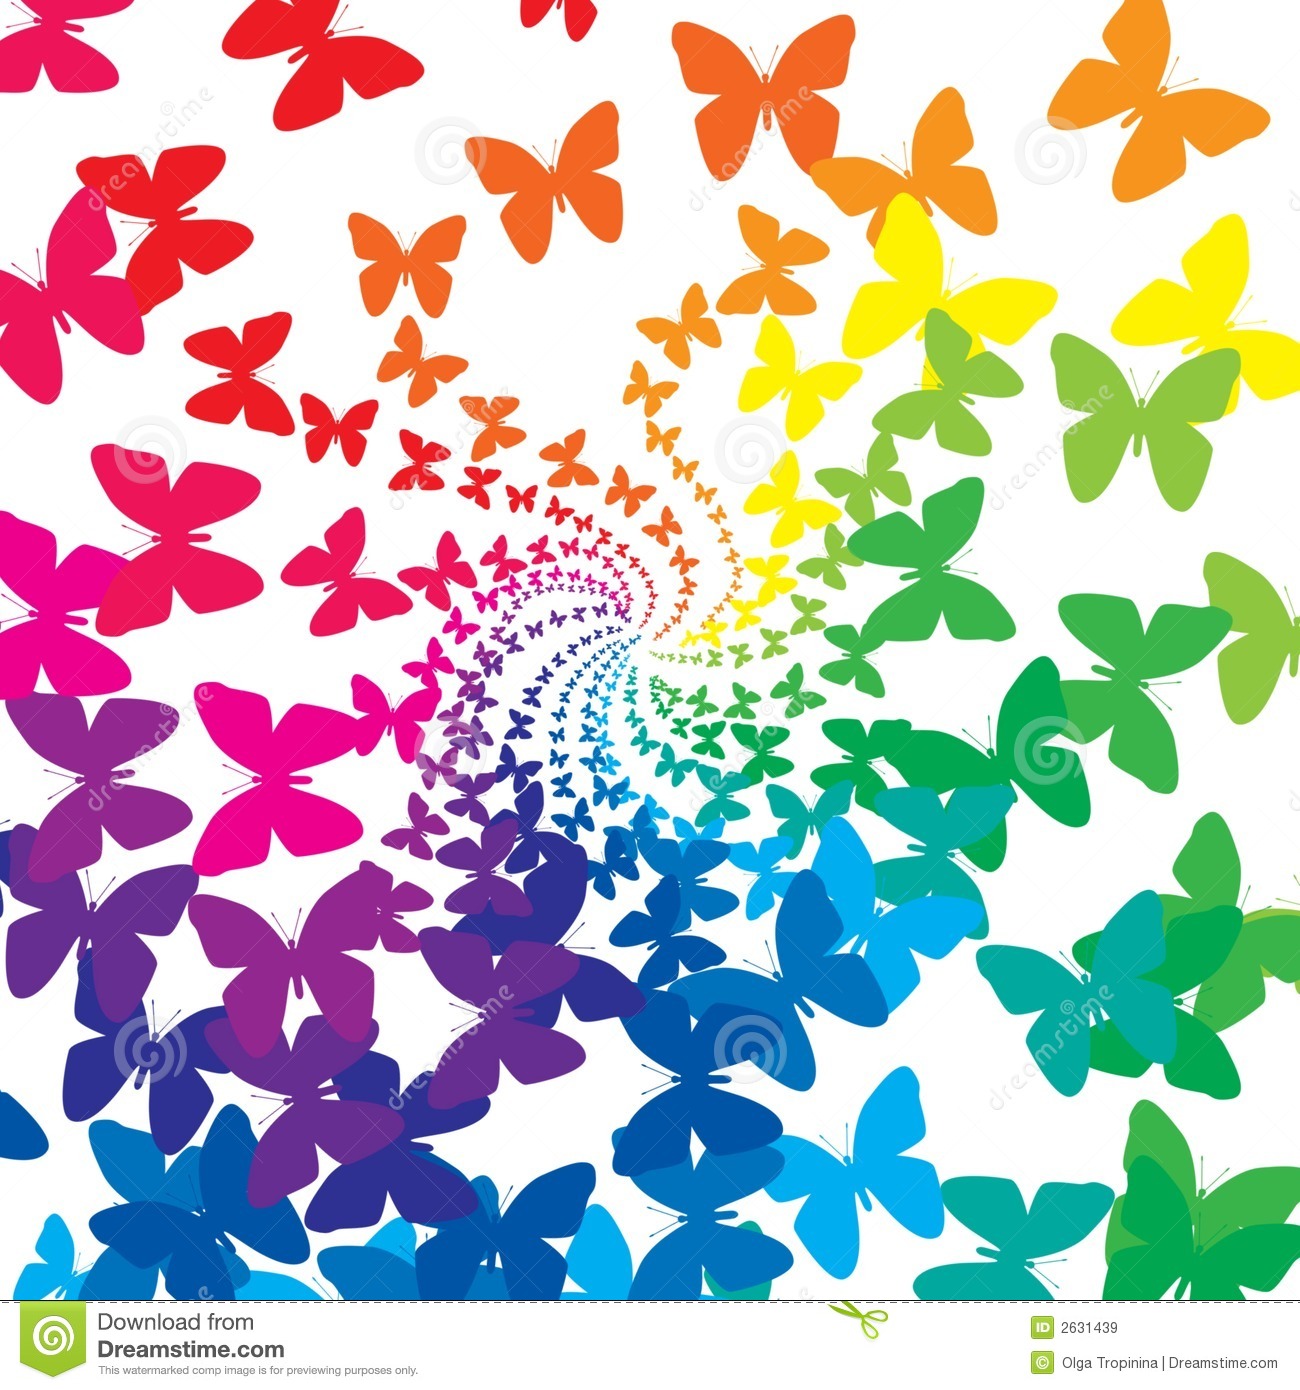 Els secrets d’en Miquel i les papallones de colors